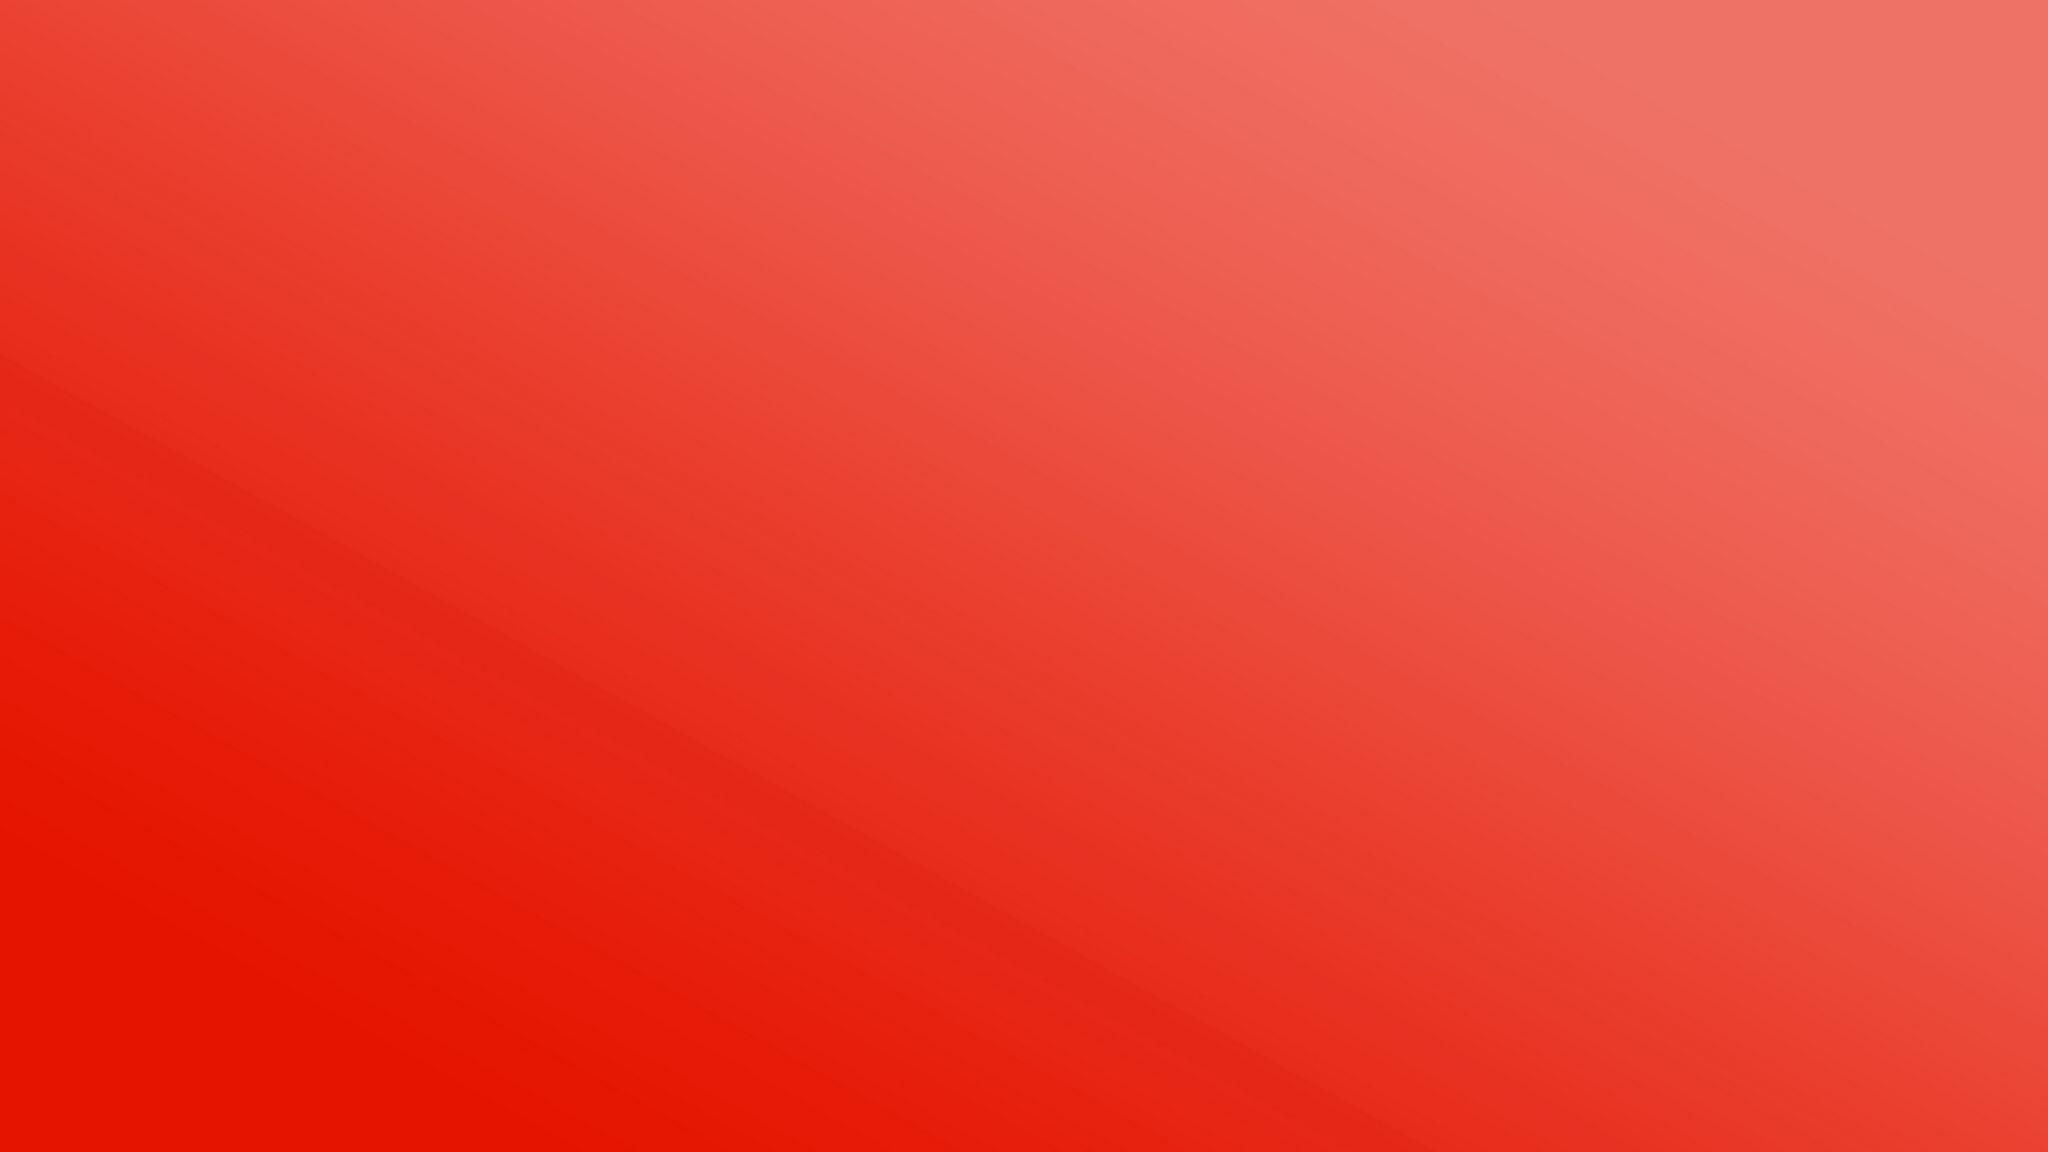 Solid Red Wallpaper là một lựa chọn đơn giản nhưng rất đẹp để trang trí màn hình máy tính của bạn. Sắc đỏ đậm sẽ mang lại cảm giác mạnh mẽ và mạnh mẽ cho không gian làm việc của bạn.